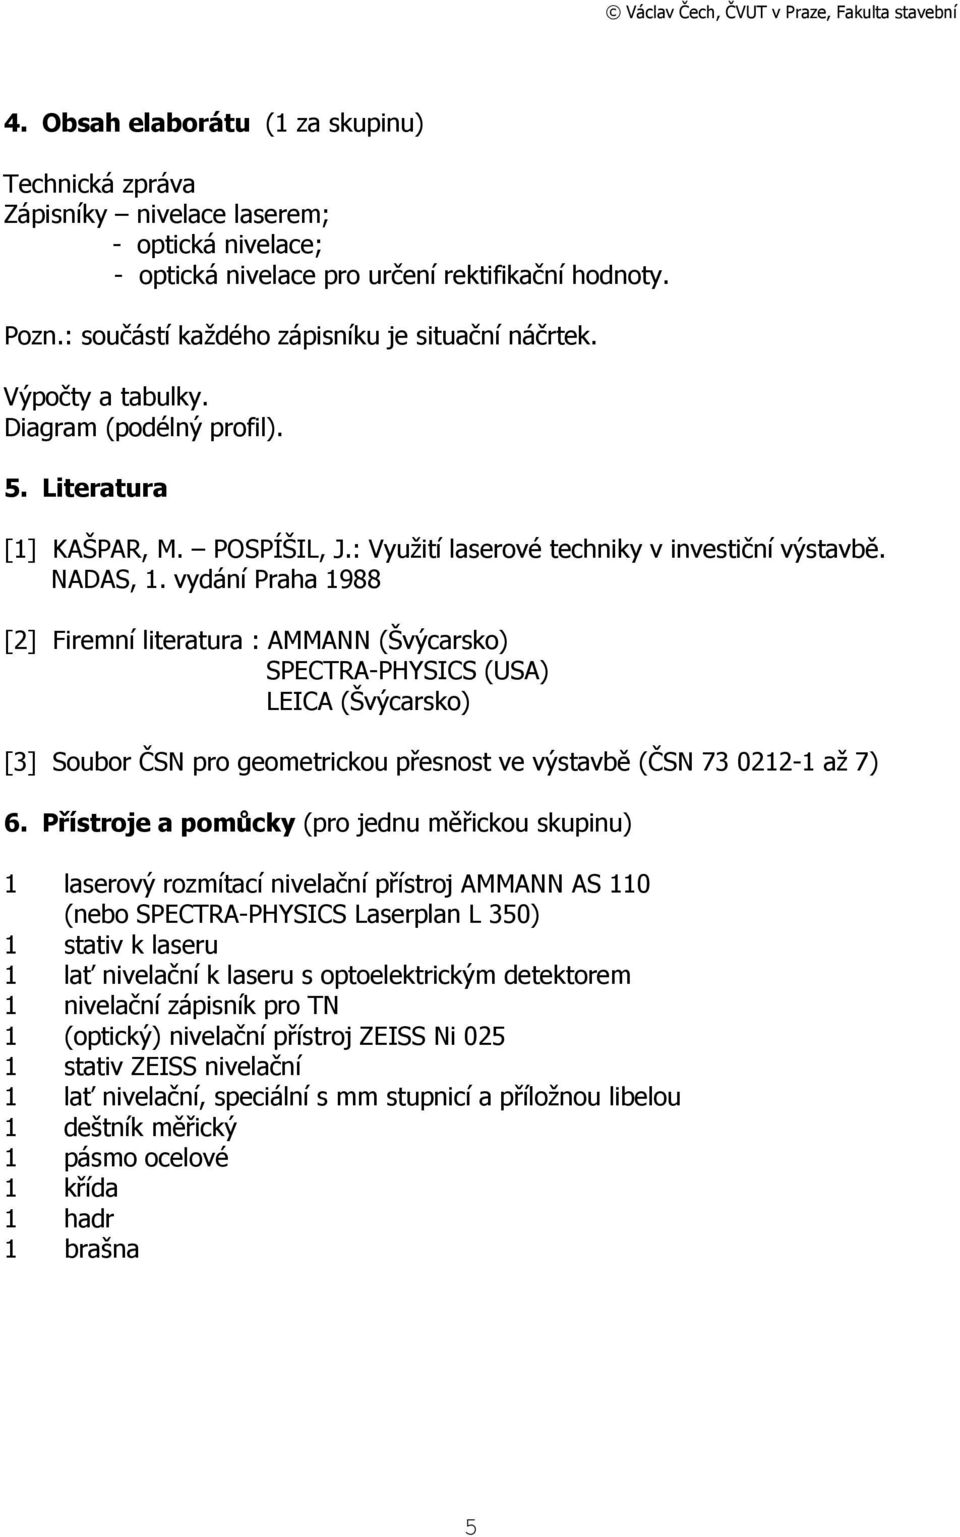 vydání Praha 1988 [2] Firemní literatura : AMMANN (Švýcarsko) SPECTRA-PHYSICS (USA) LEICA (Švýcarsko) [3] Soubor ČSN pro geometrickou přesnost ve výstavbě (ČSN 73 0212-1 až 7) 6.